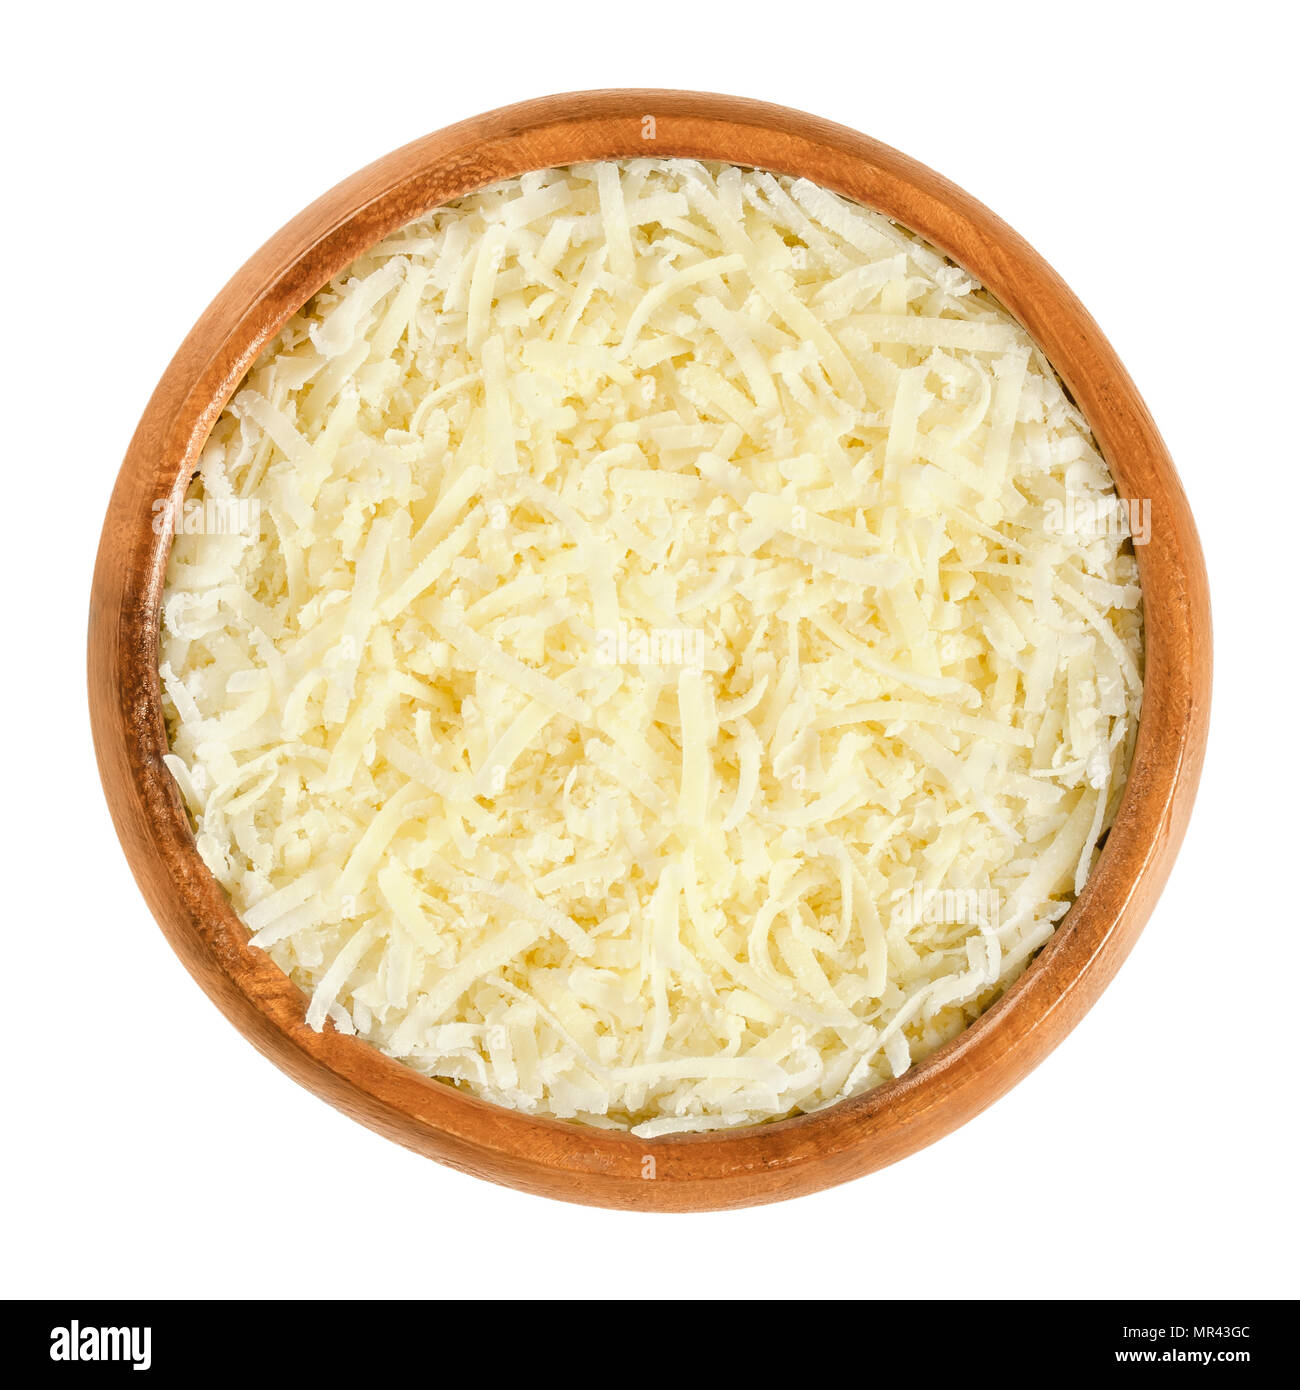 Geriebenen Parmesan in Houten. Parmigiano-Reggiano. Italienische Harte, körnige Käse, der leicht gelbliche Farbe, aus nicht pasteurisierter Kuhmilch. Stockfoto